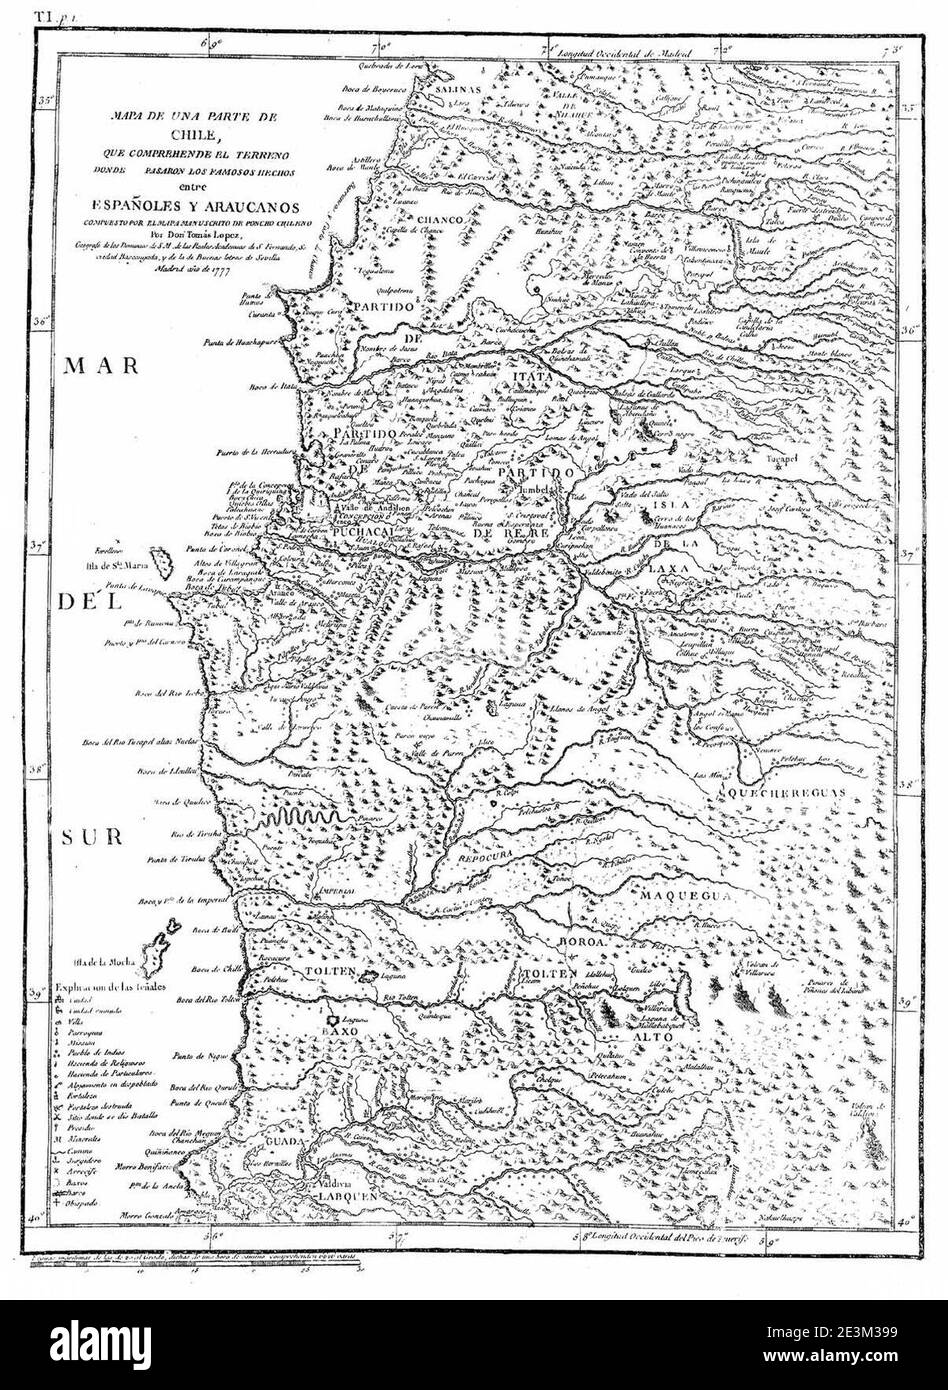 Mapa Chile Españoles y Araucanos. Stock Photo